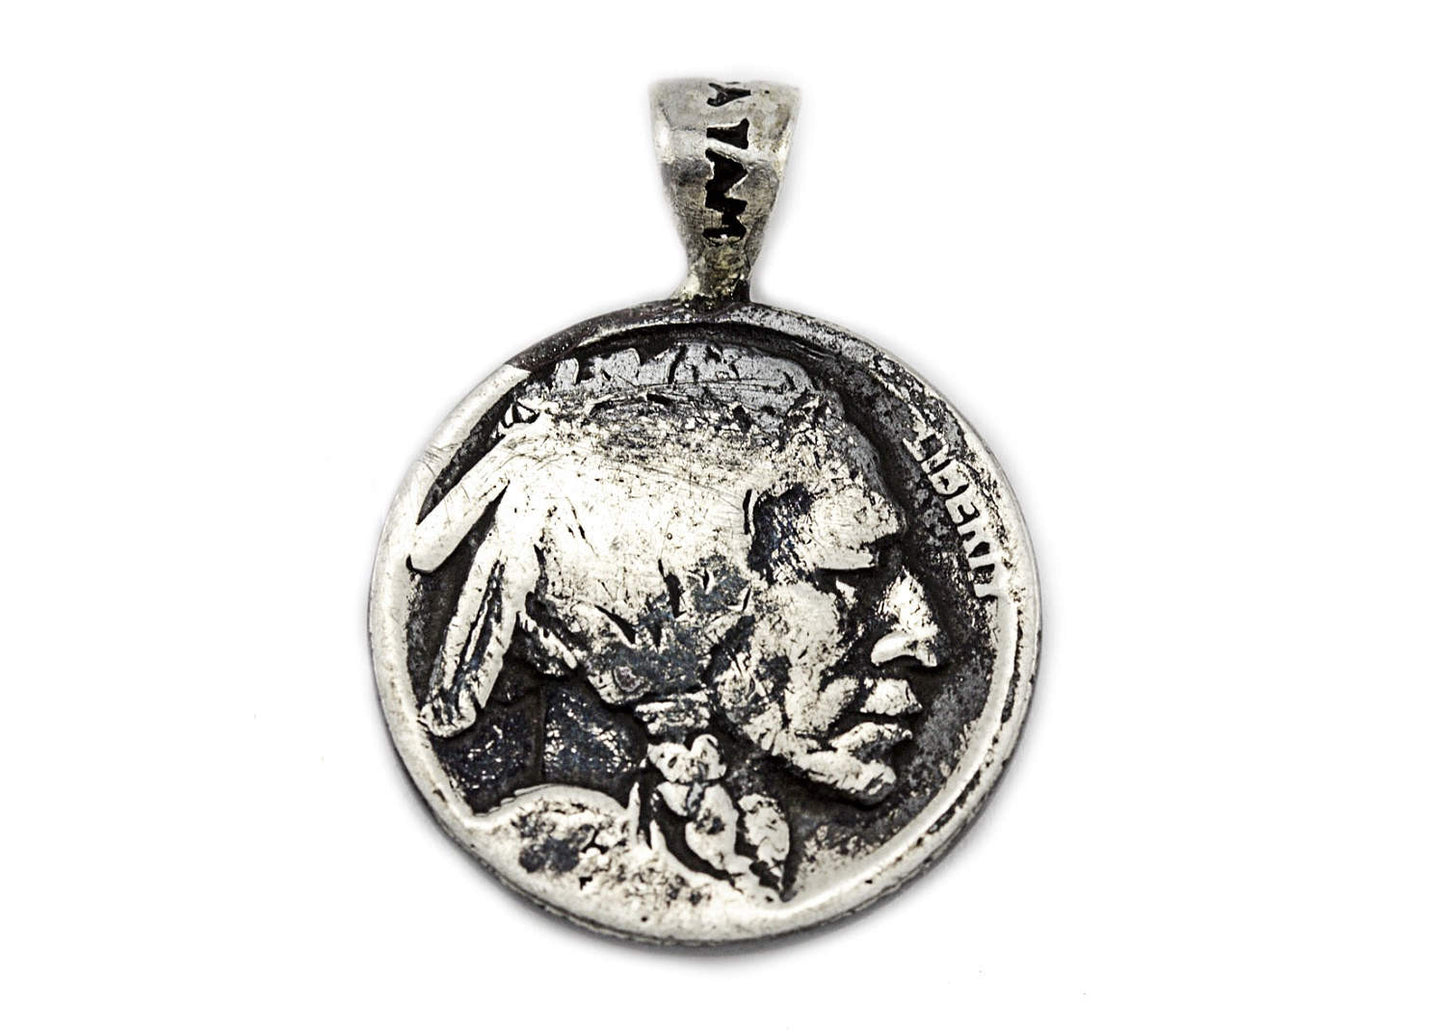 Silver Buffalo coin pendant with owl